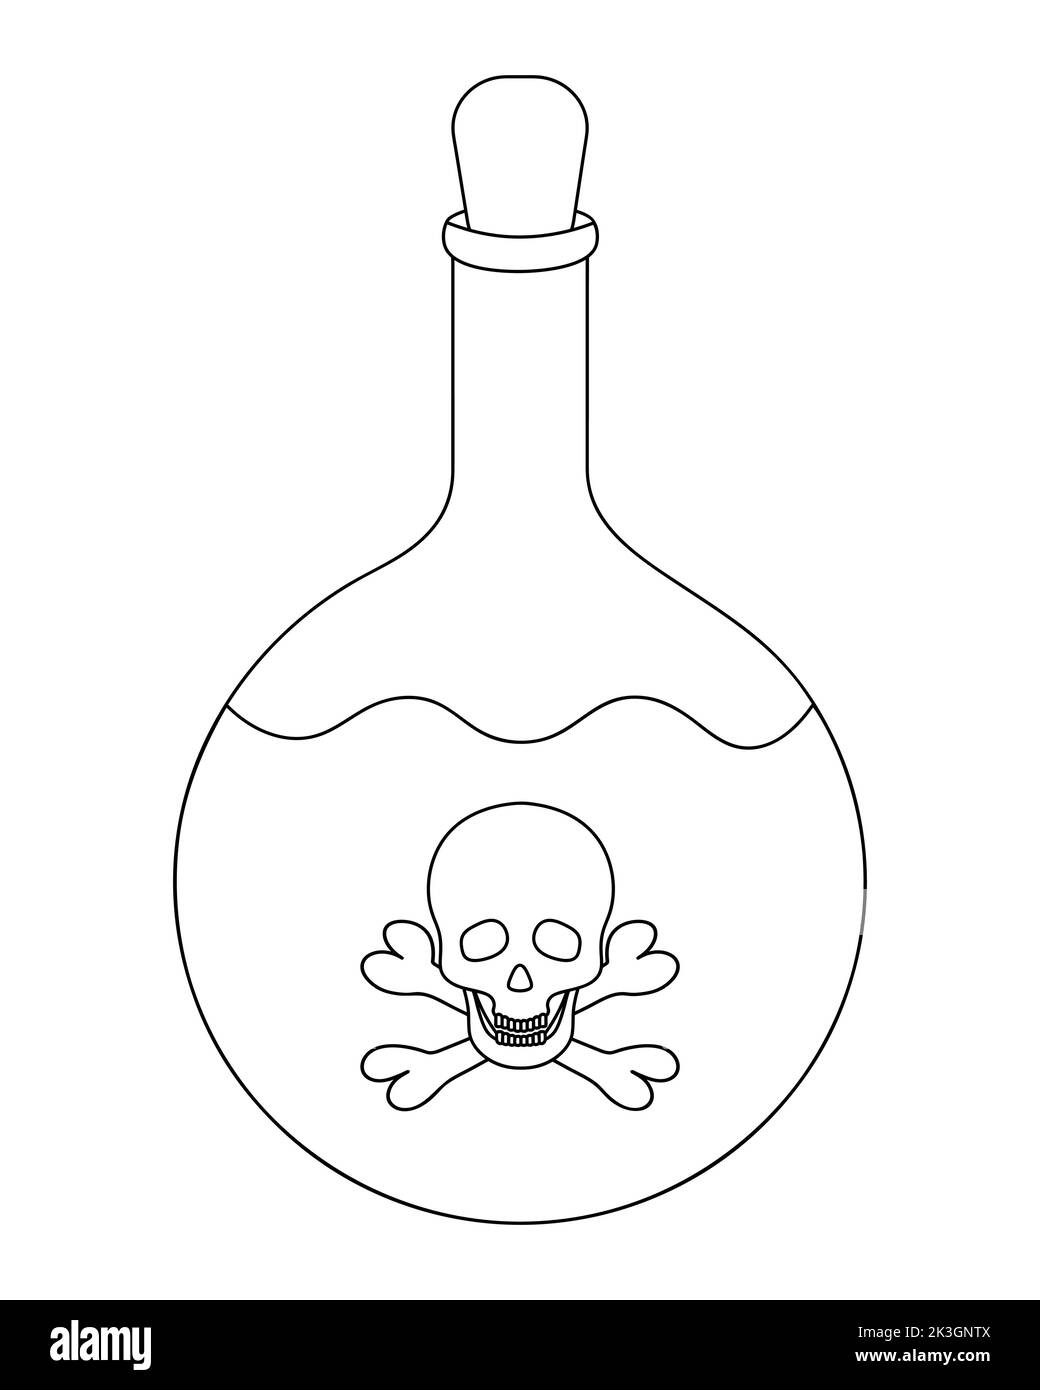 Bottiglia di veleno. L'emblema sulla bottiglia è il cranio e le ossa. Illustrazione vettoriale. Contorno su sfondo bianco isolato. Stile Doodle. Schizzo. Illustrazione Vettoriale